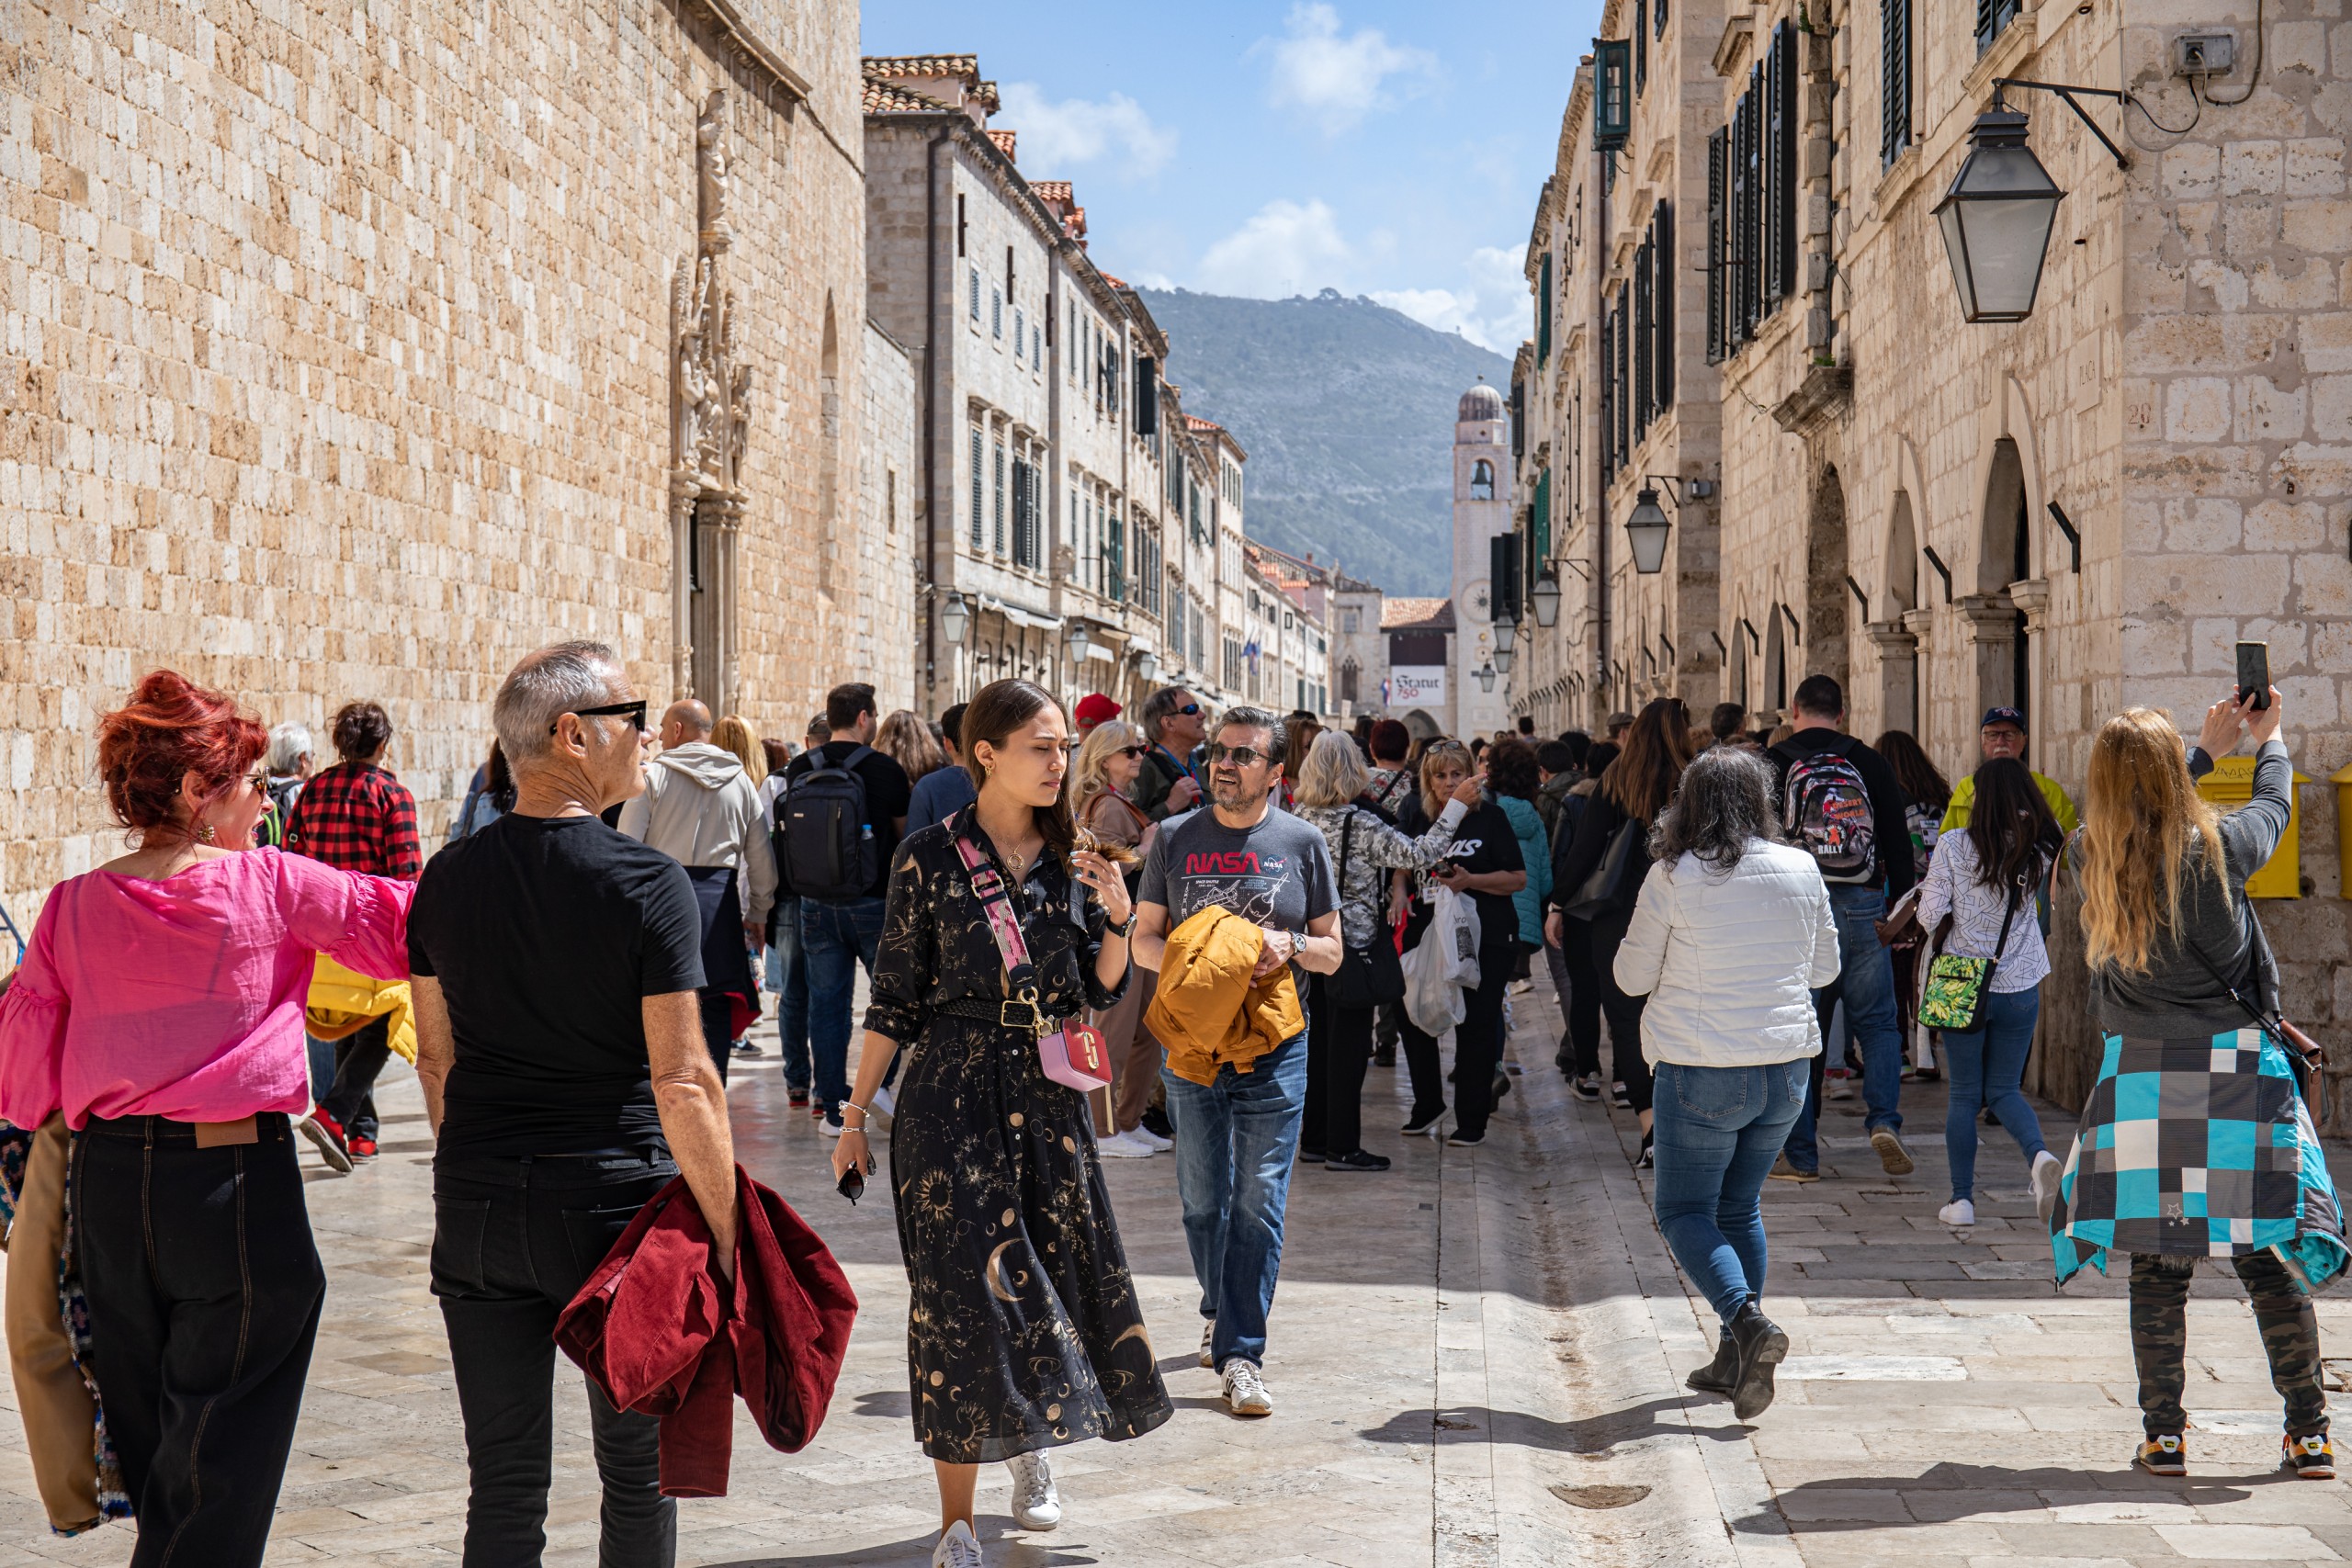 23.04.2022., Stara gradska jezgra, Dubrovnik - Grad pun gostiju. Kafici i restorani popunjeni.   Photo: Grgo Jelavic/PIXSELL